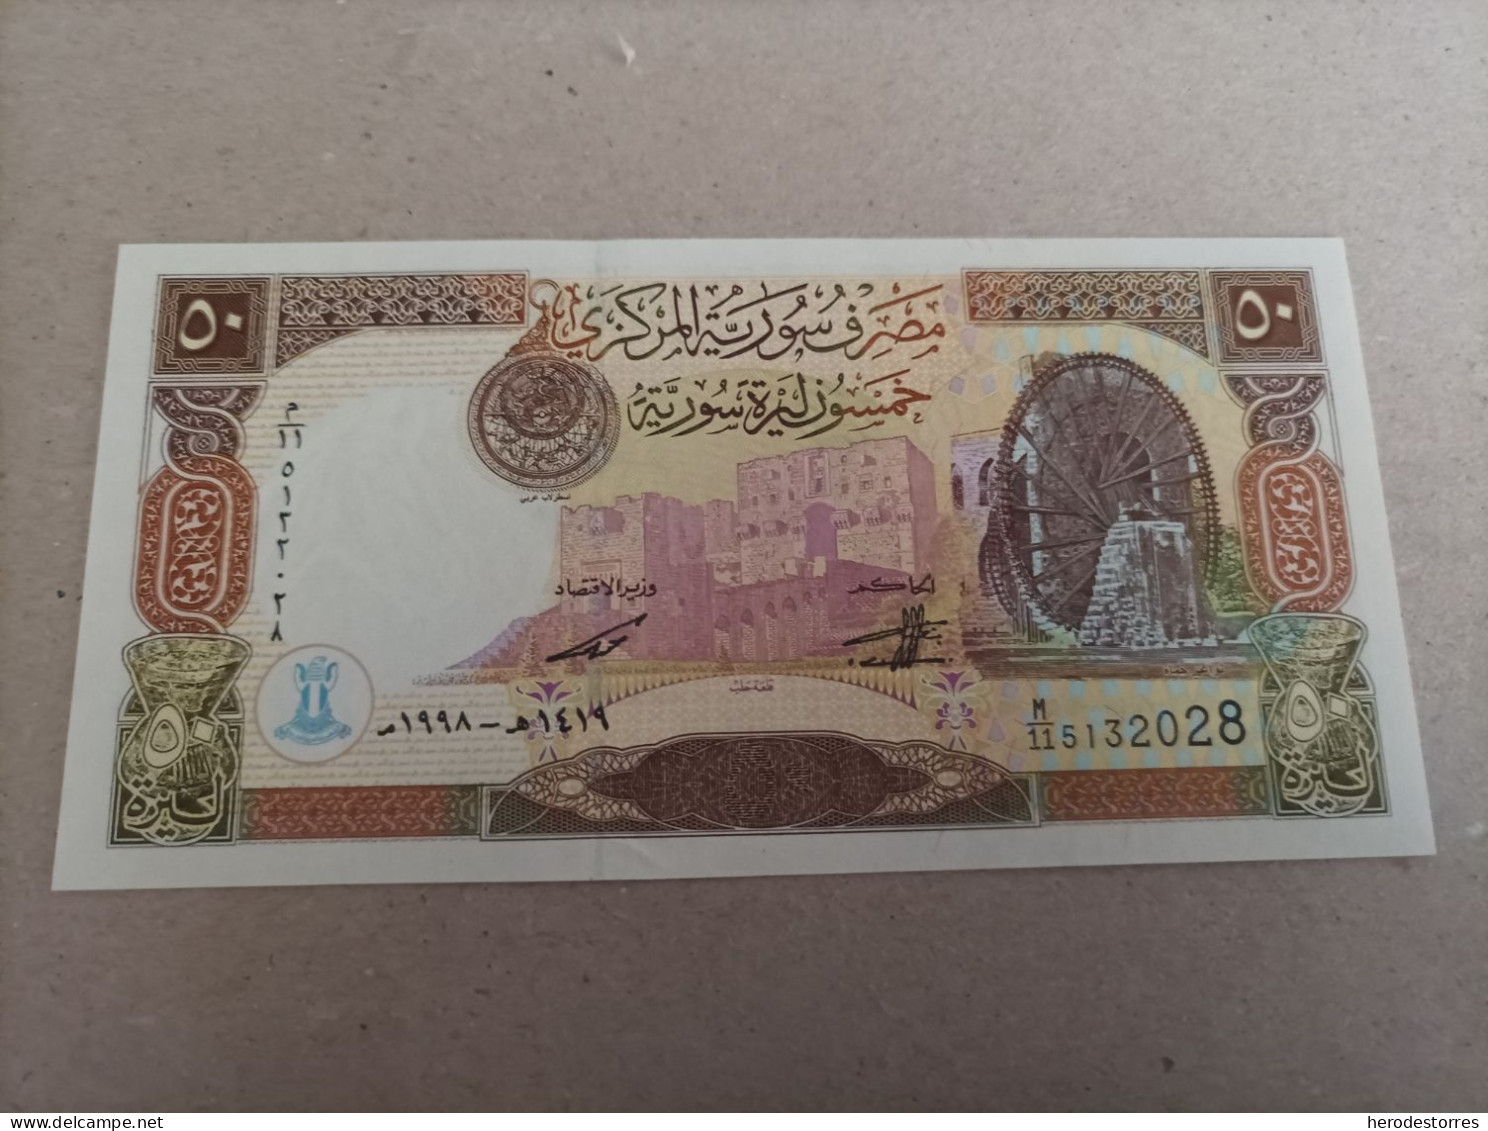 Billete De Siria De 50 Syrian Pounds, Año 1998, UNC - Siria